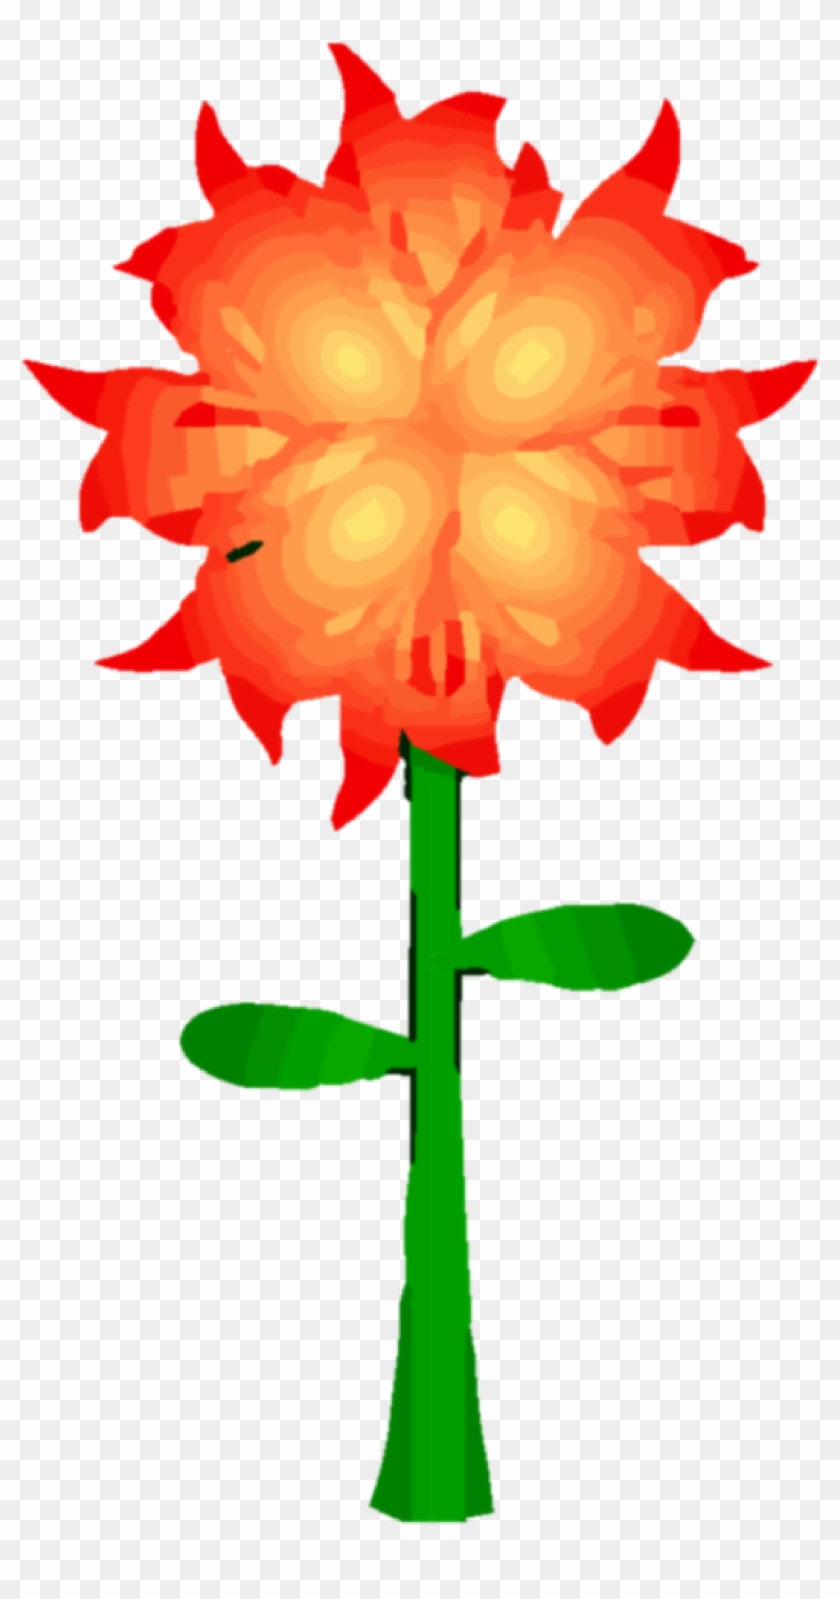 Fire Flower Png Clipart - Fire Flower Clip Art #341653